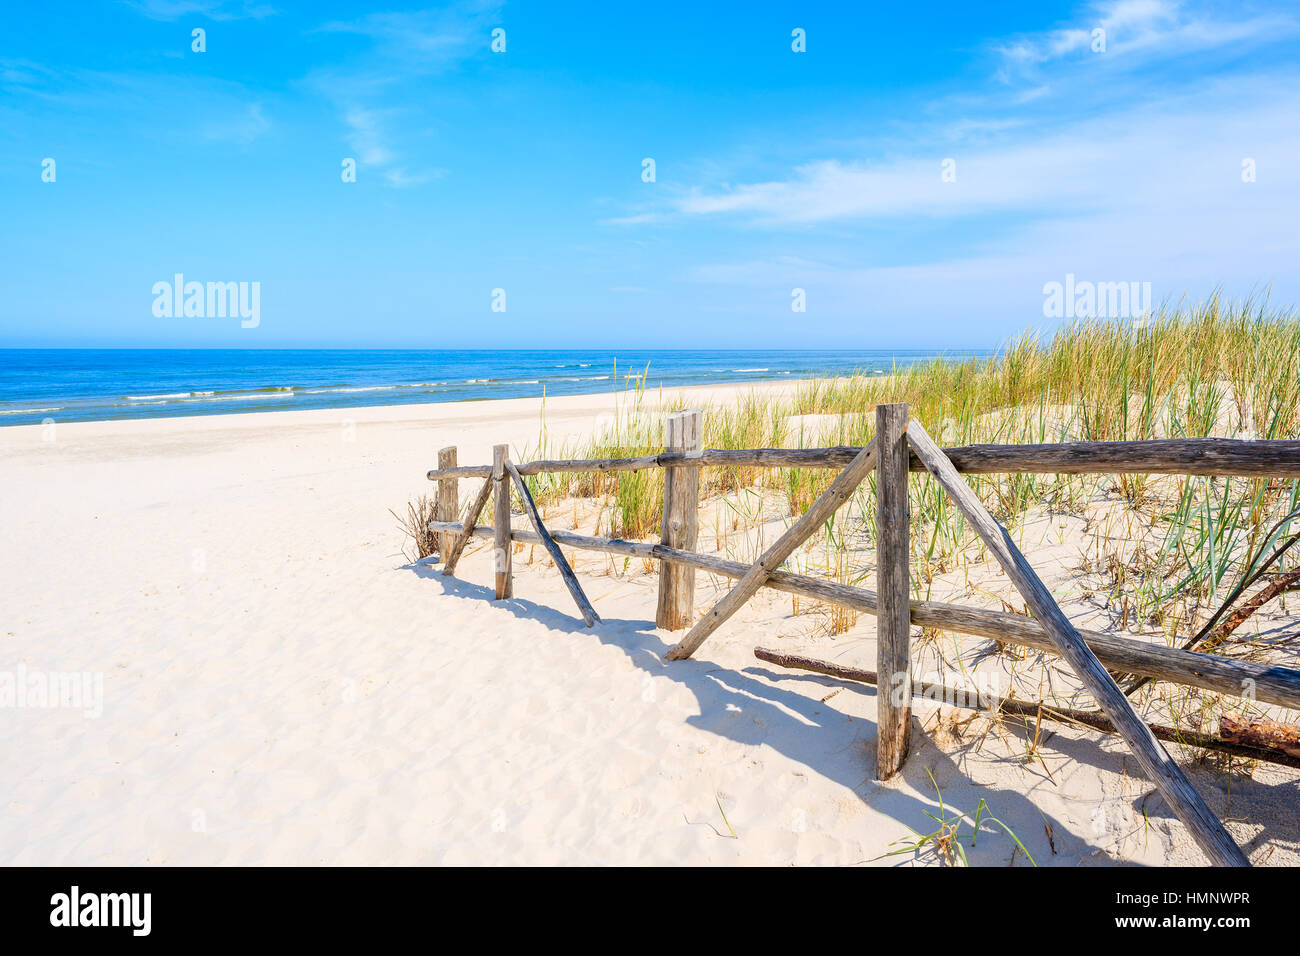 Clôture en bois d'entrée de la plage de sable blanc, mer Baltique, Pologne Banque D'Images